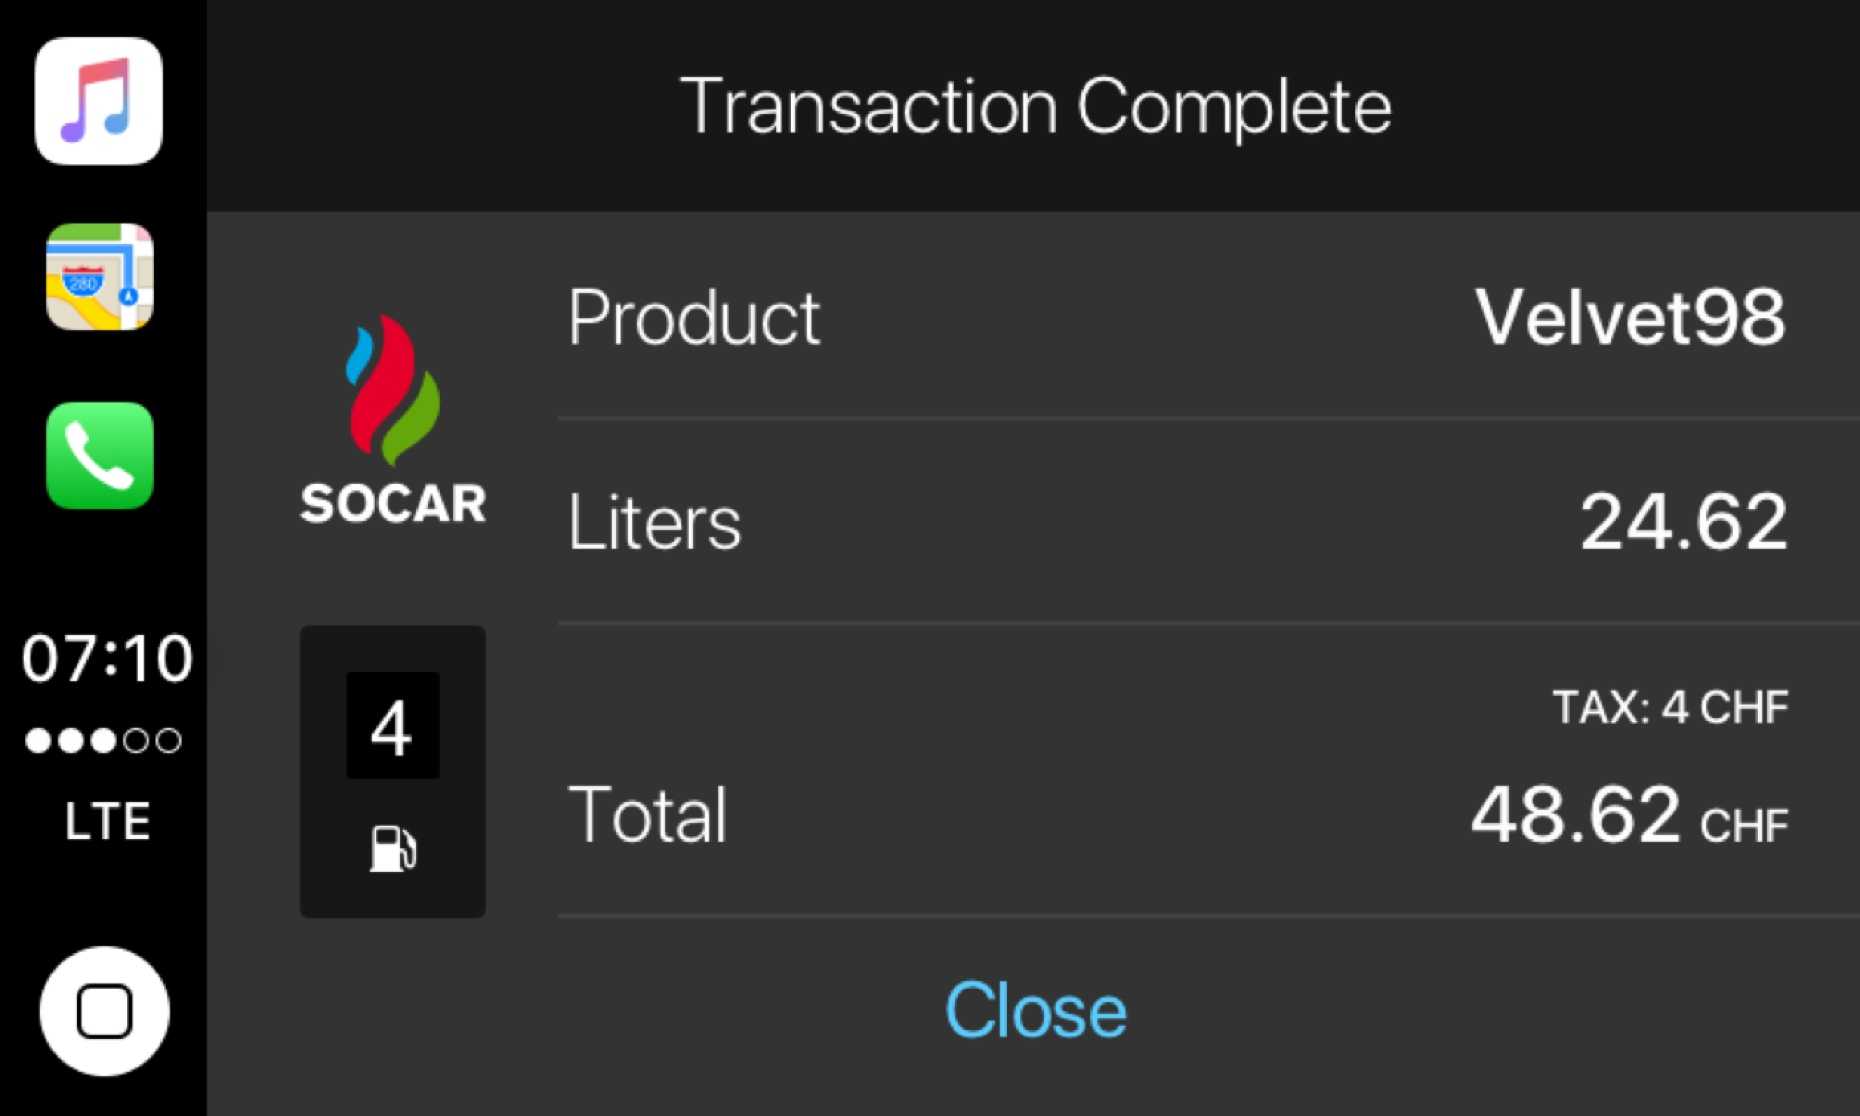 Ui ontwerp voor transactie succes scherm in auto play app voor tankstation